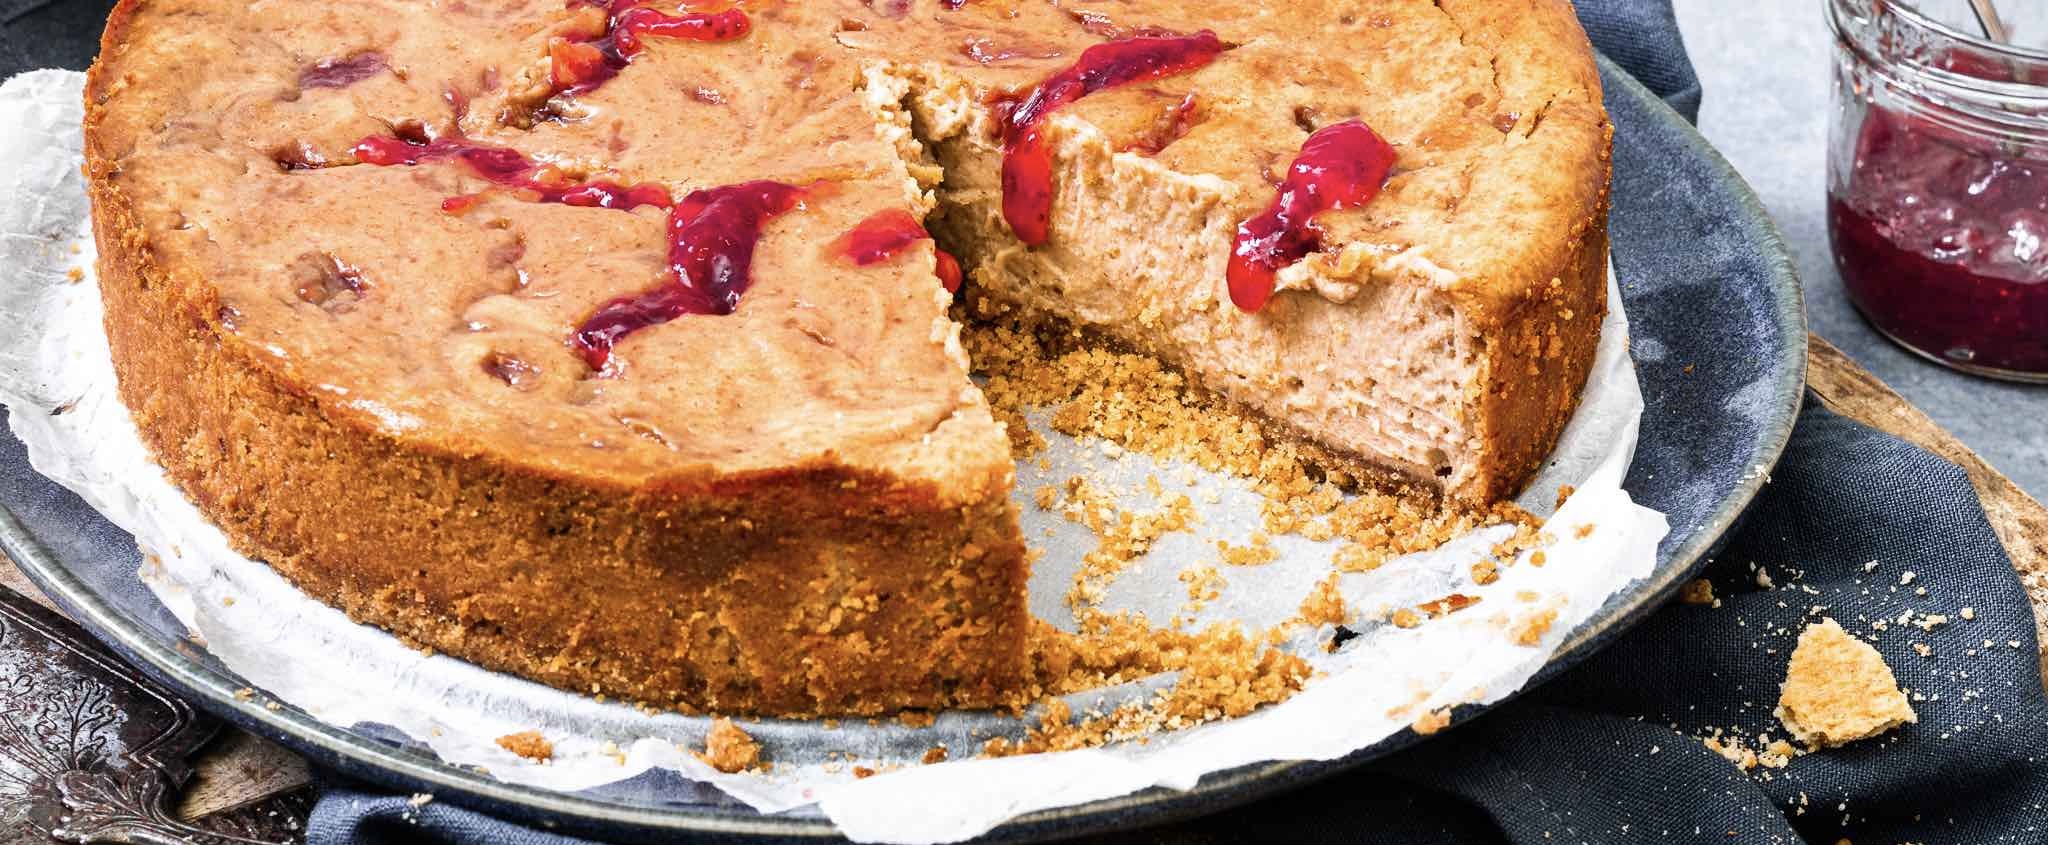 Fokking makkelijk recept: deze peanut butter & jelly cheesecake brengt jeugdherinneringen naar boven